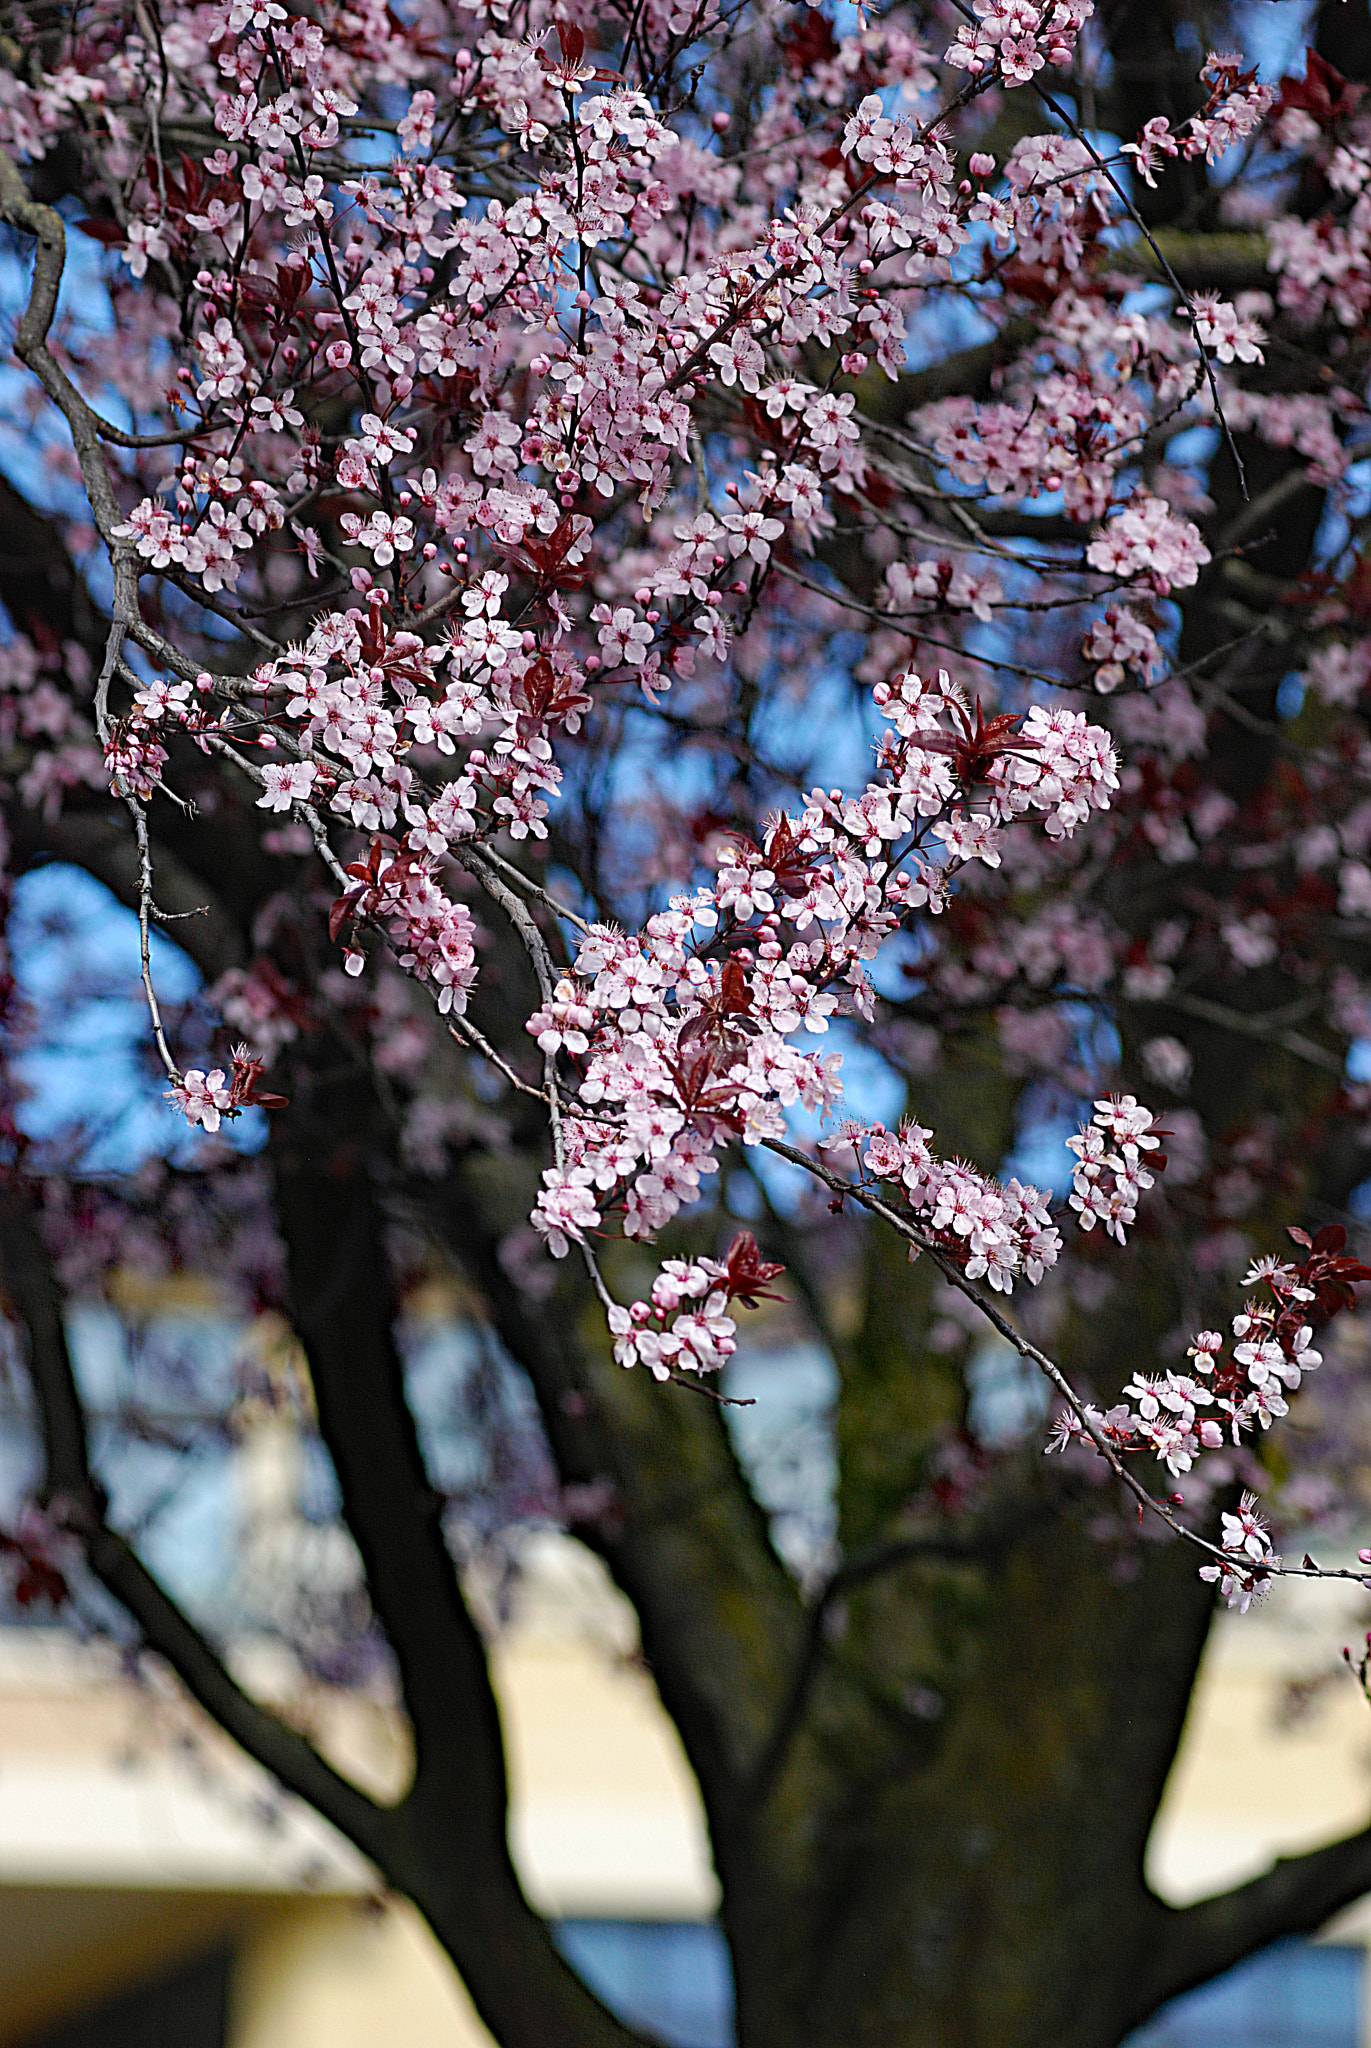 Nikon D80 + Nikon AF-Nikkor 80-200mm F2.8D ED sample photo. Cherry blossom photography